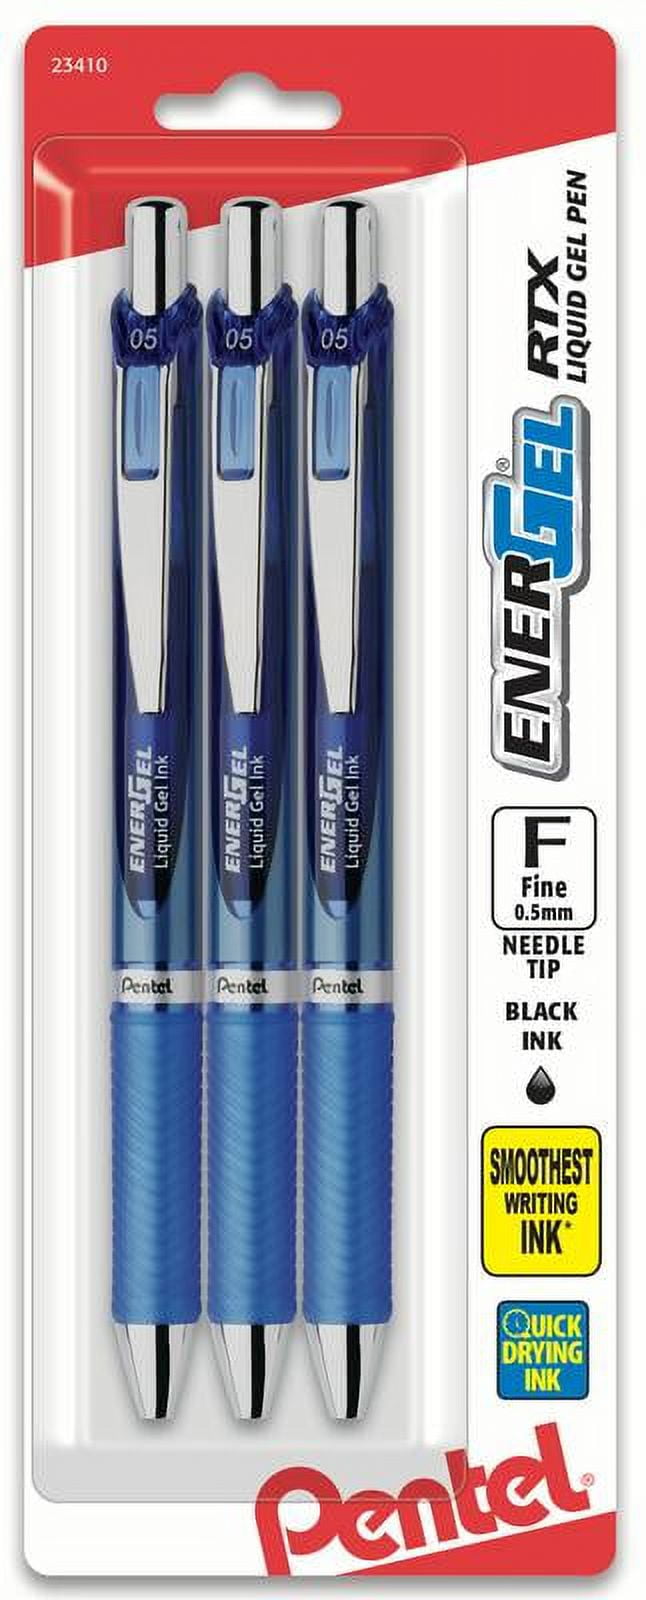 Pentel EnerGel RTX Retractable Liquid Gel Pen, (0.5mm) Needle Tip